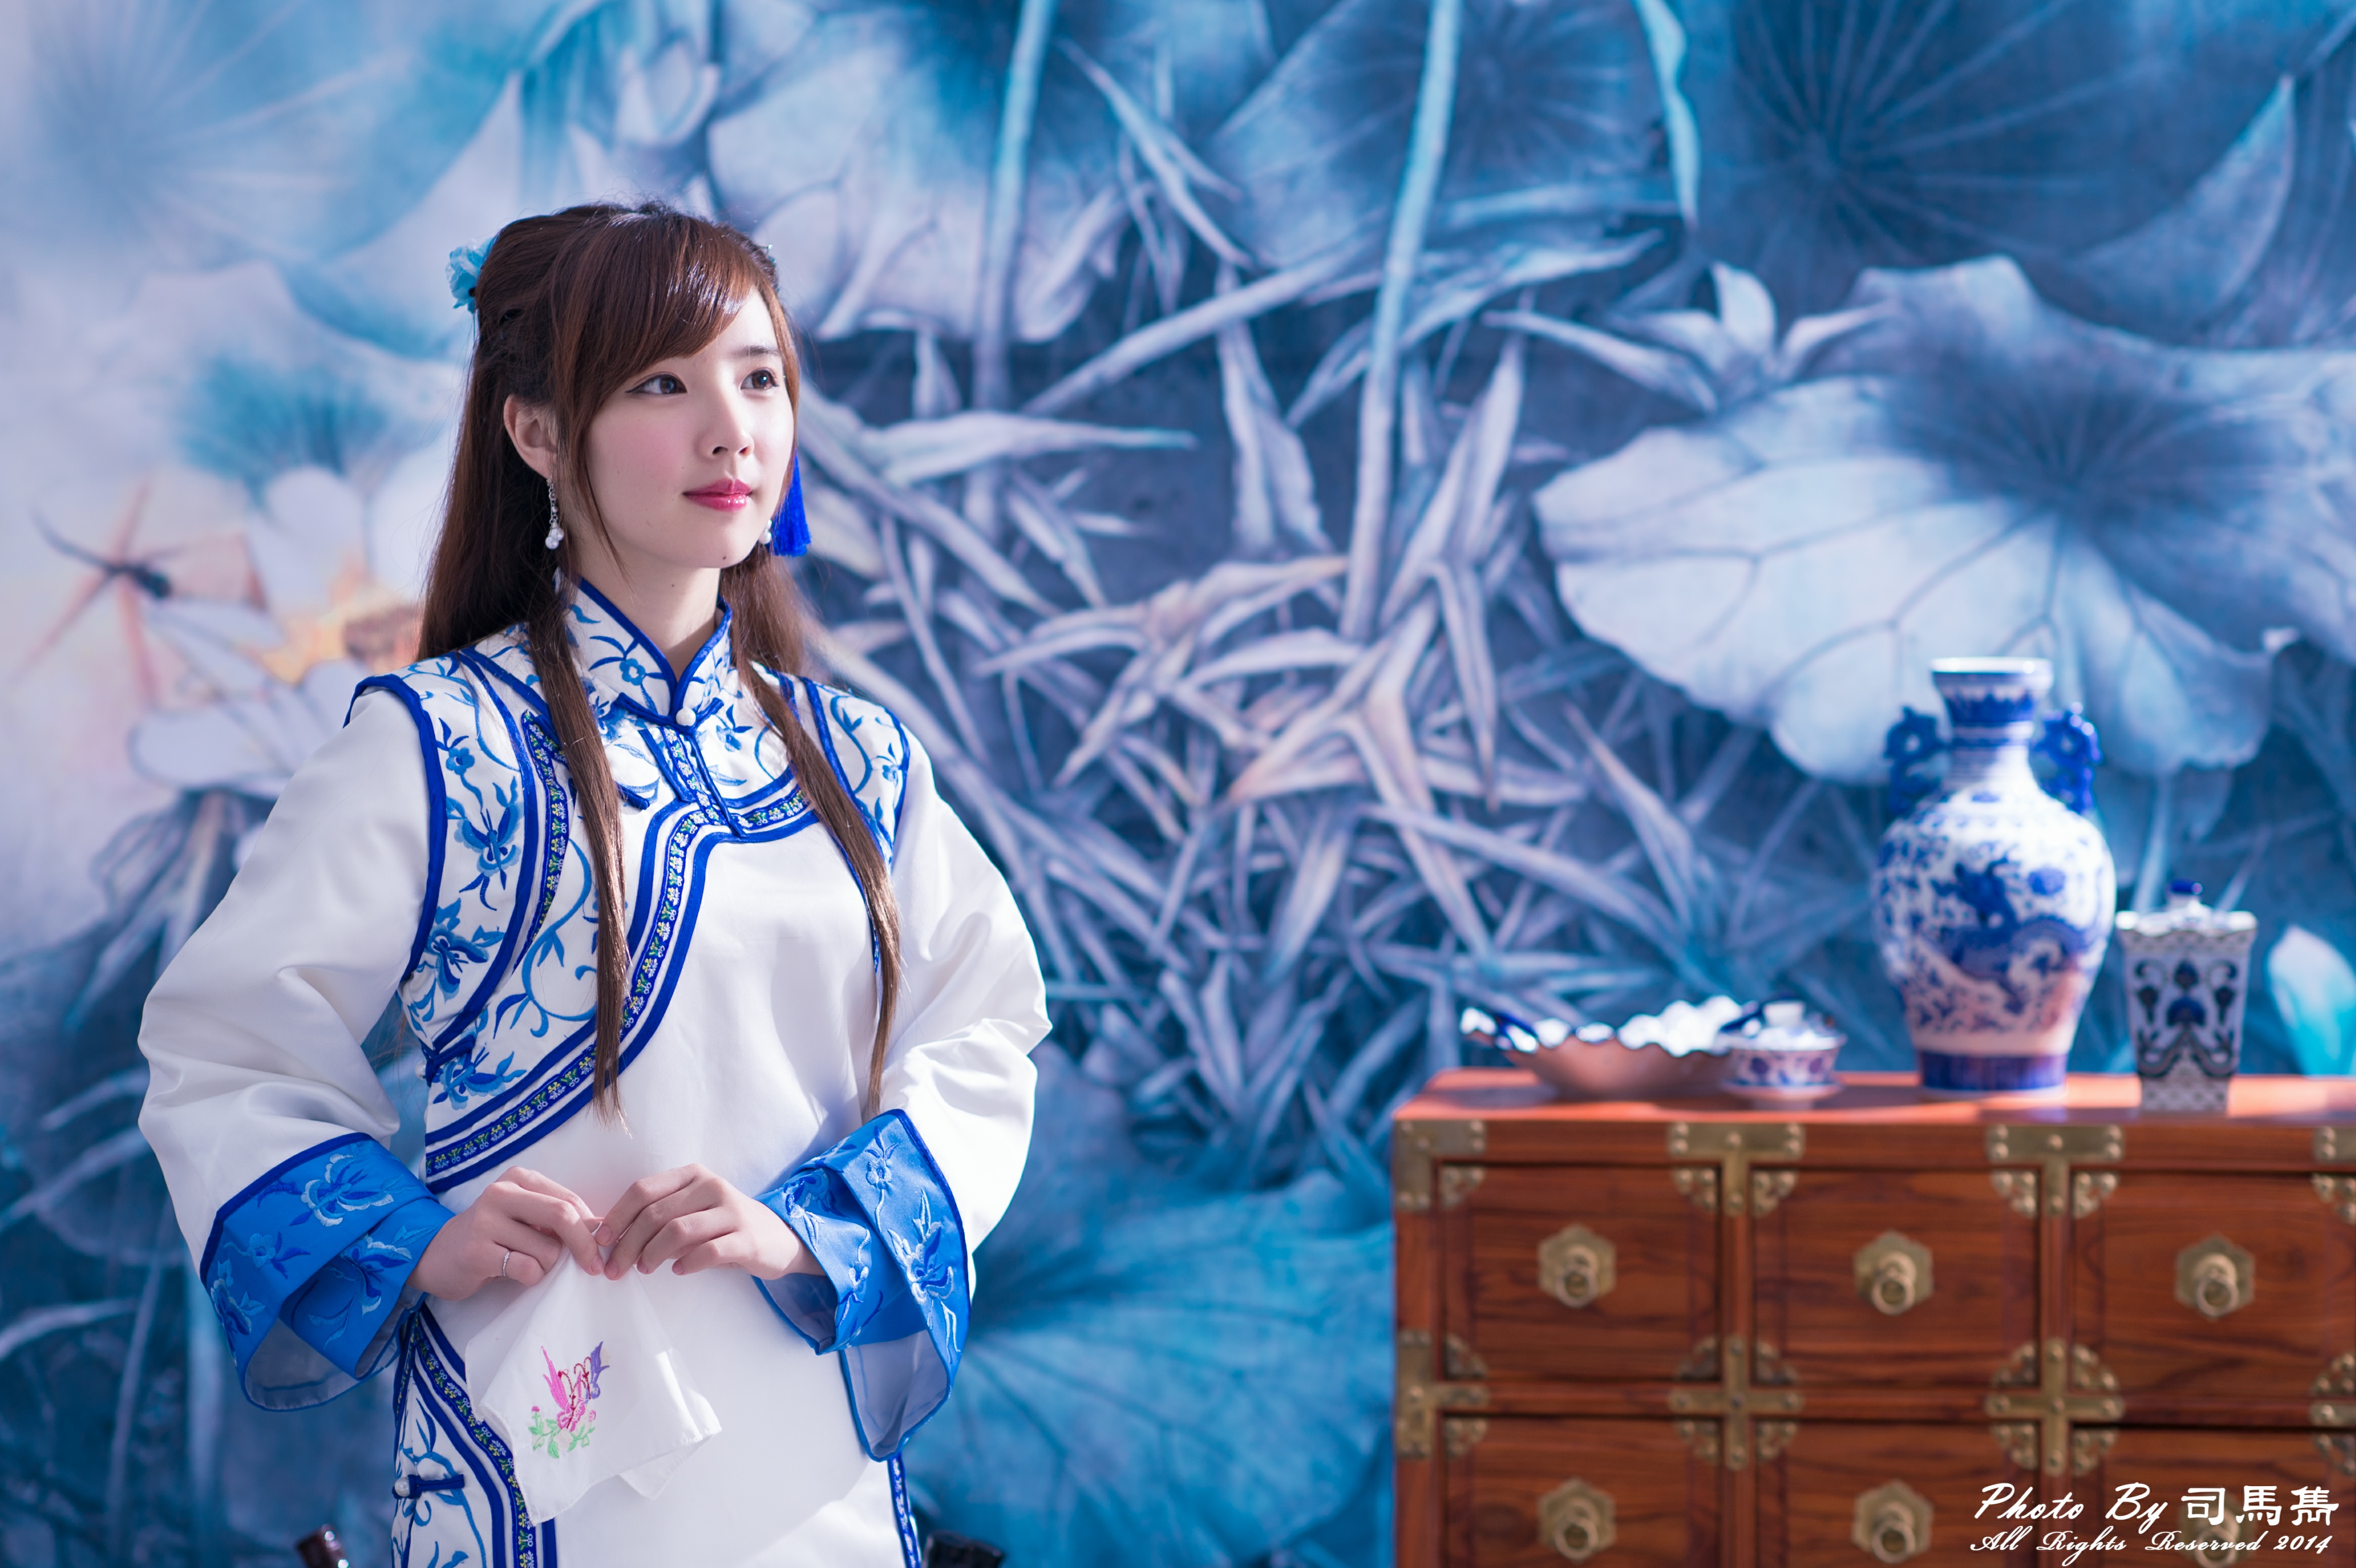 women, yu chen zheng, asian, model, taiwanese, tea set, traditional costume, vase